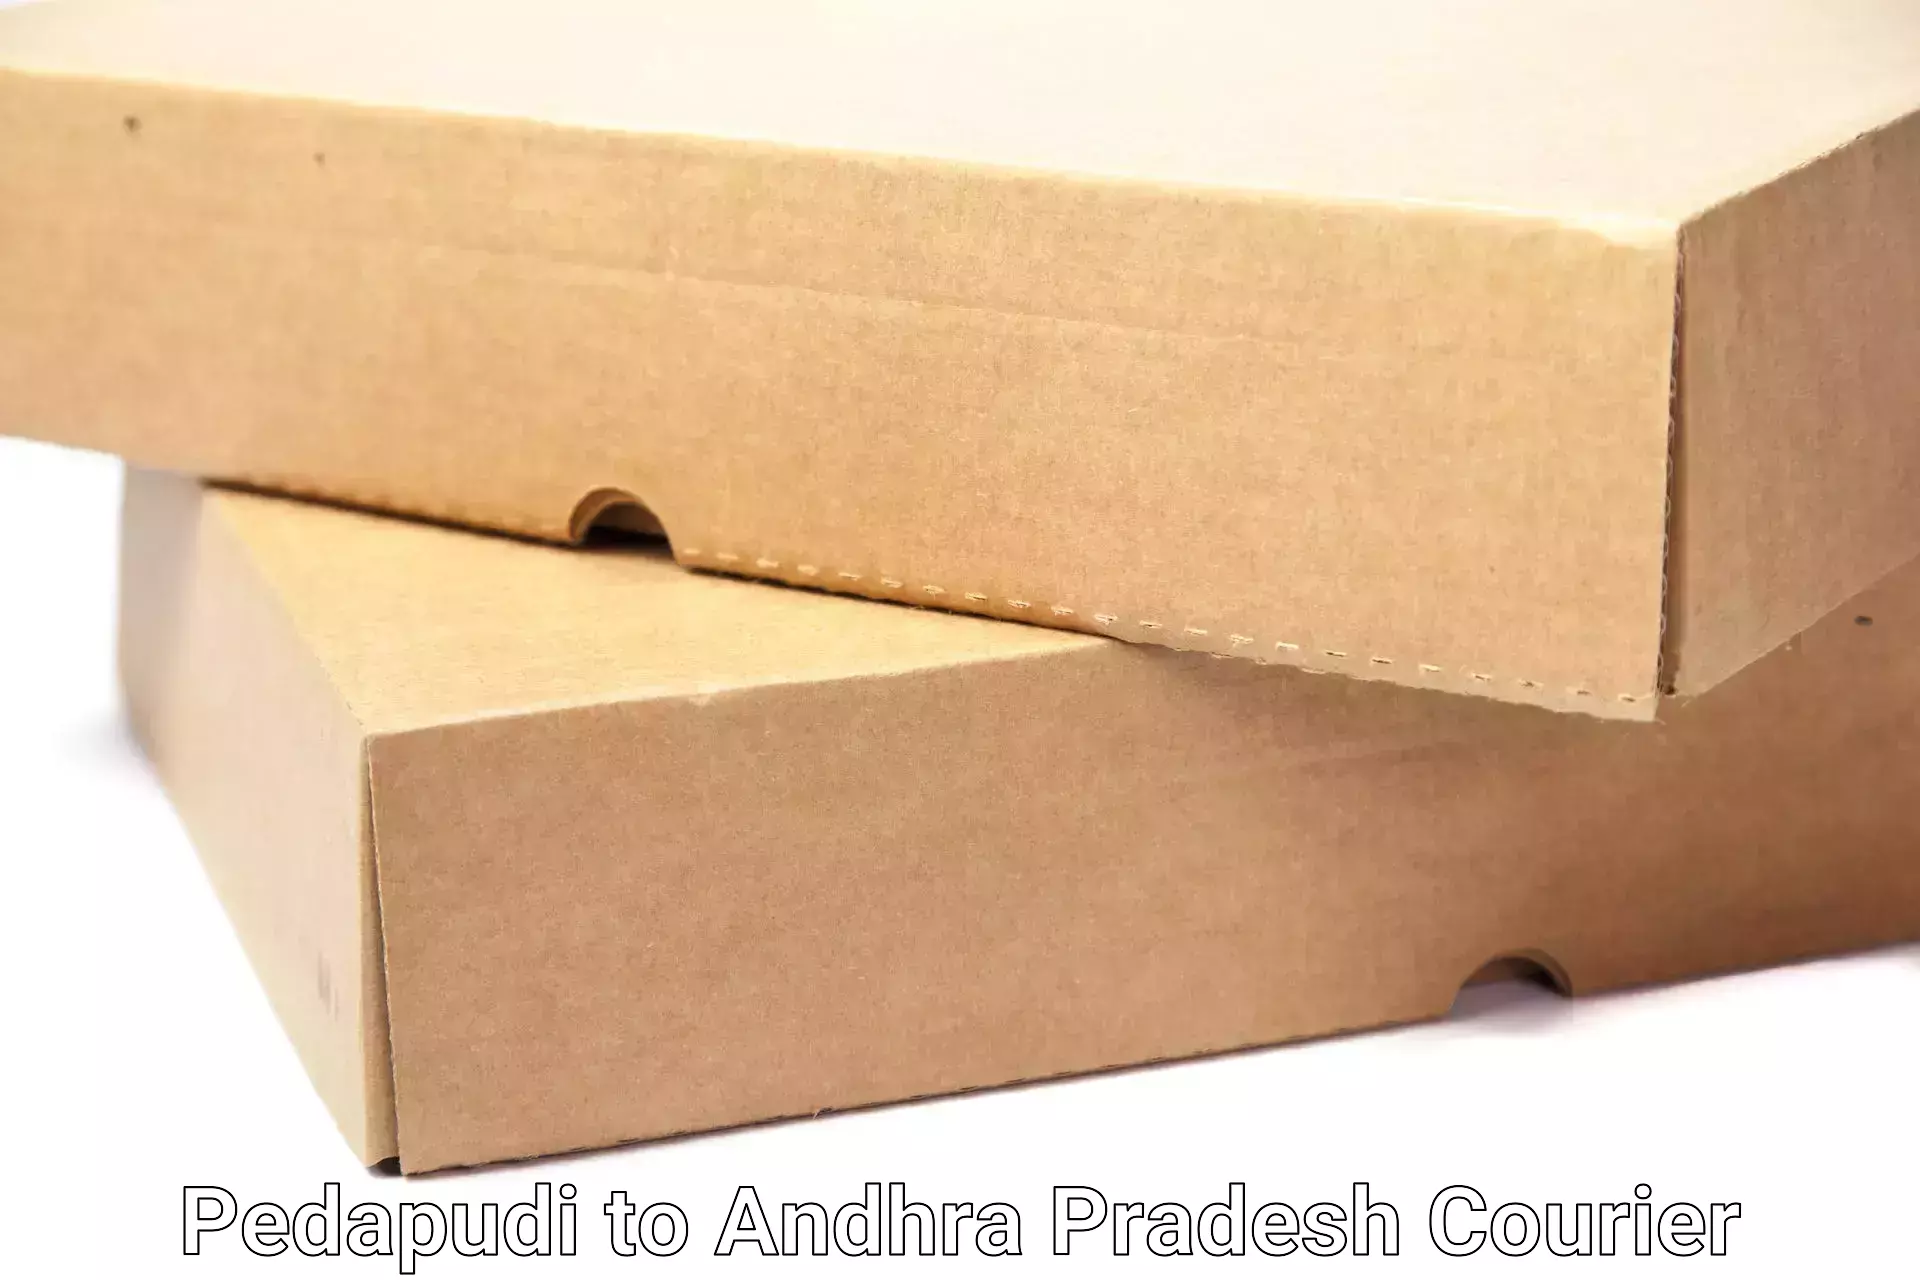 Reliable furniture shifting Pedapudi to Sri Venkateswara University Tirupati